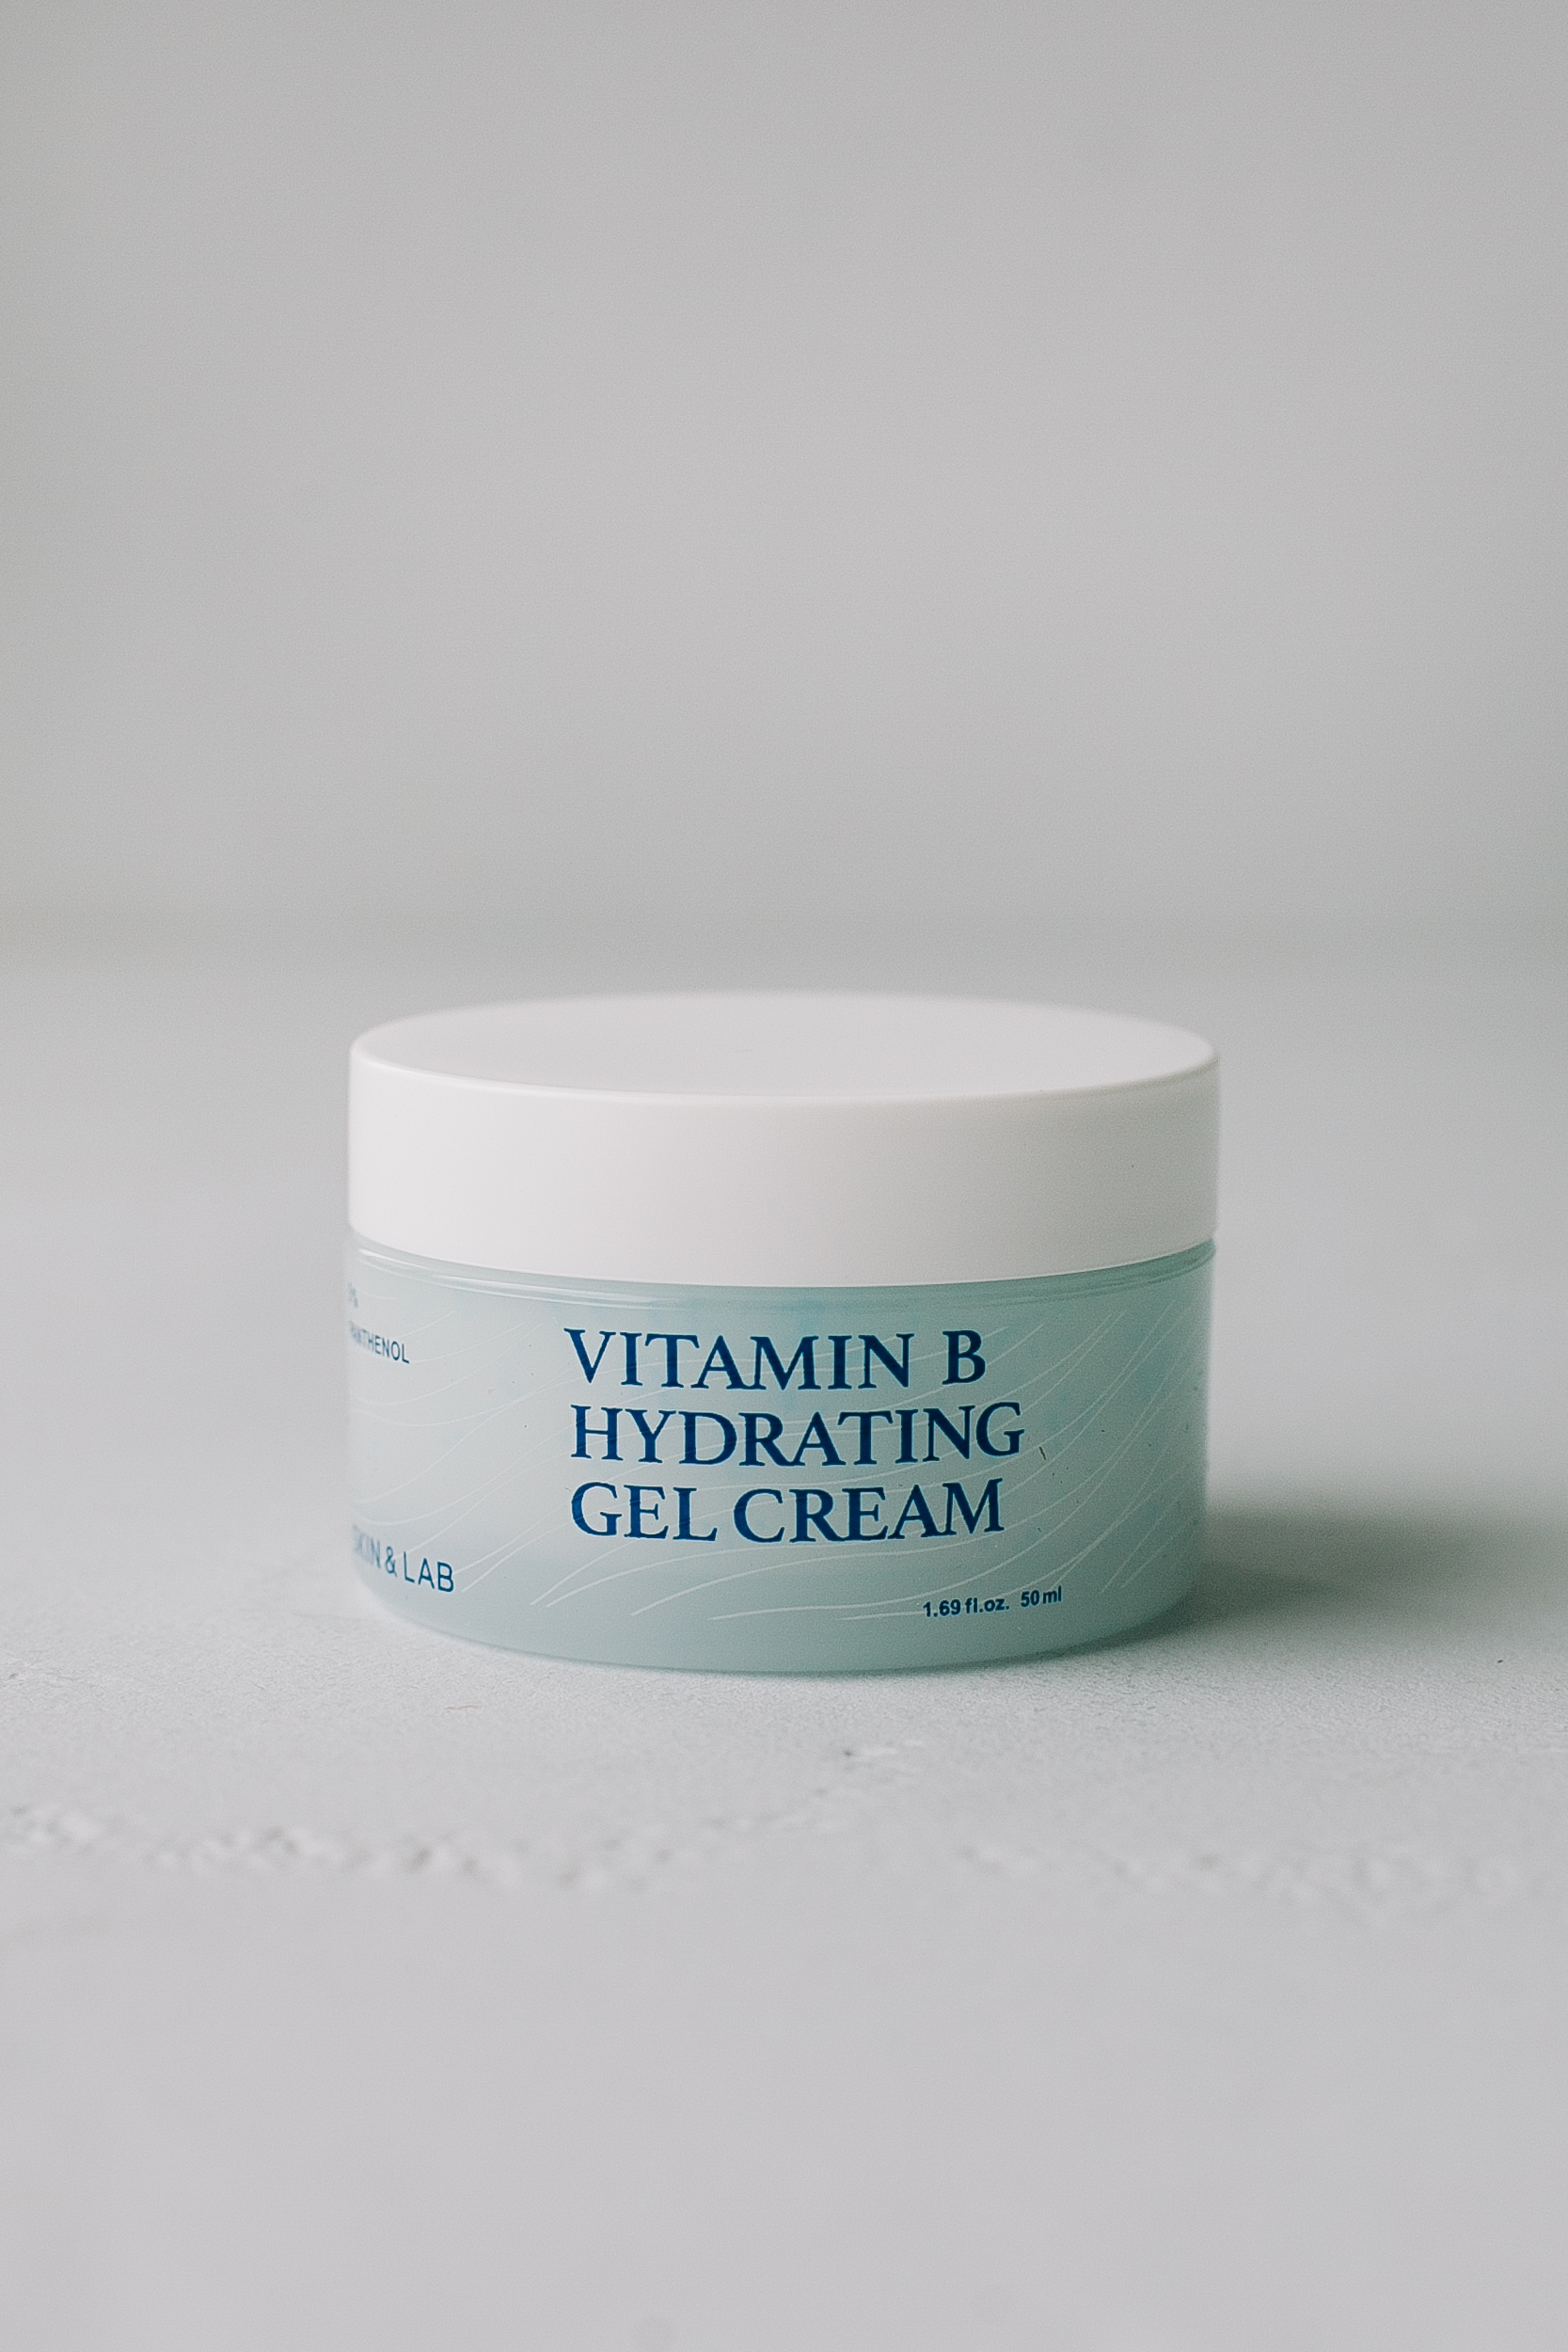 Увлажняющий гель-крем с витамином B SKIN&LAB Vitamin B Hydrating Gel Cream 50ml - фото 1